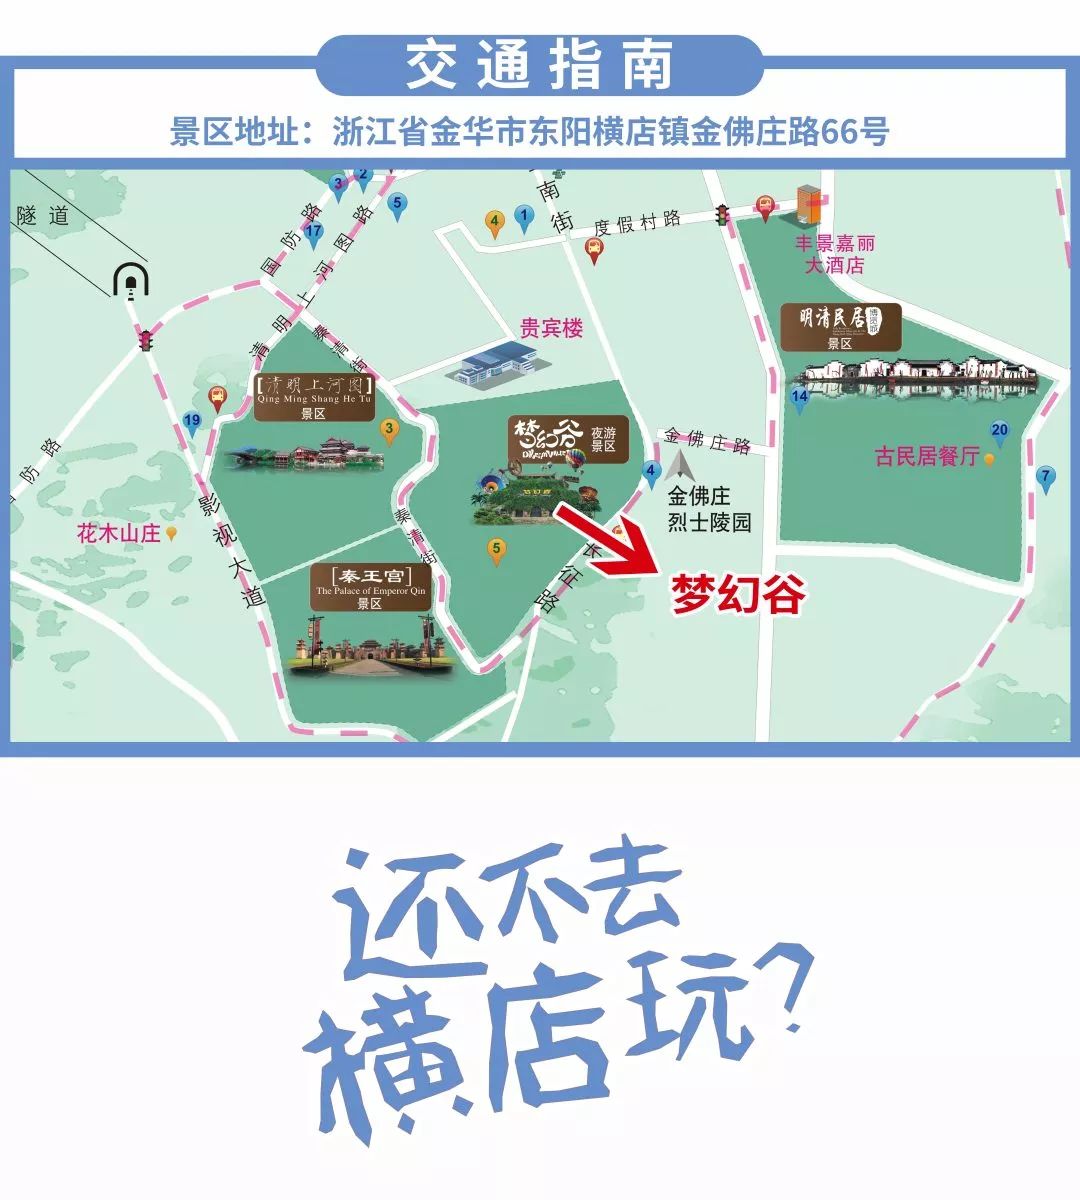 99元抢购横店梦幻谷一票通玩!